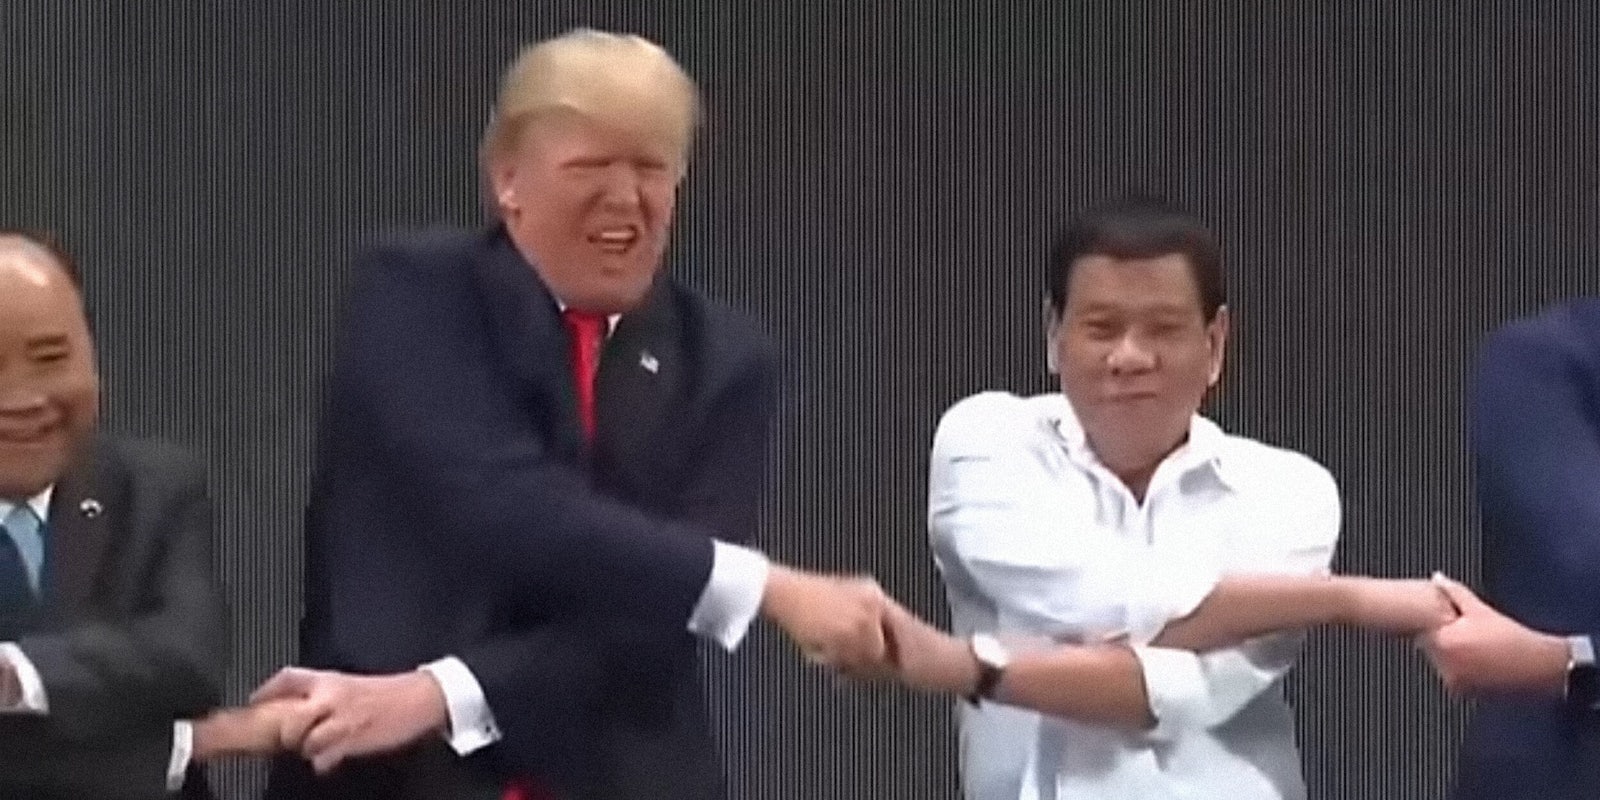 Donald Trump awkward handshake at ASEAN conference